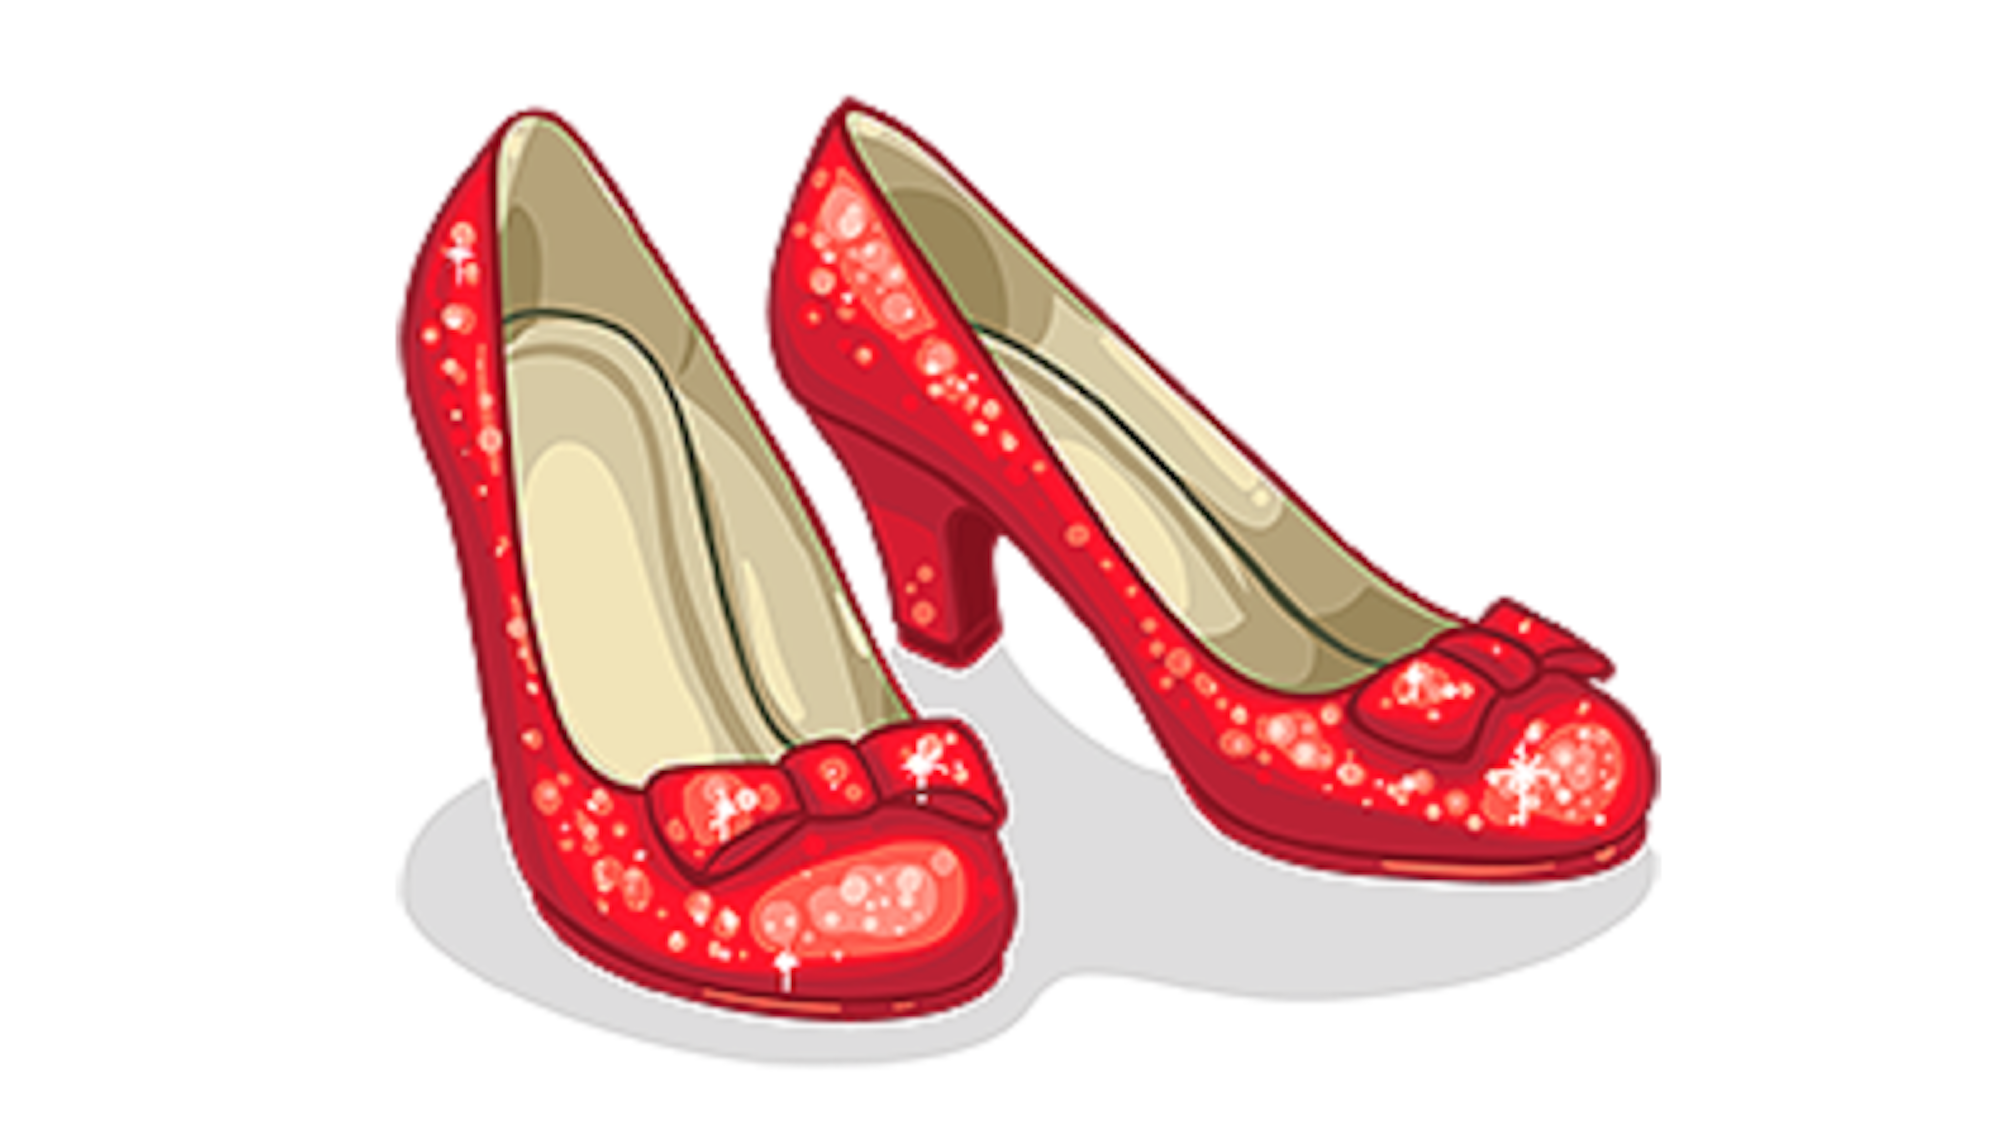 Dorothys ruby slippers.